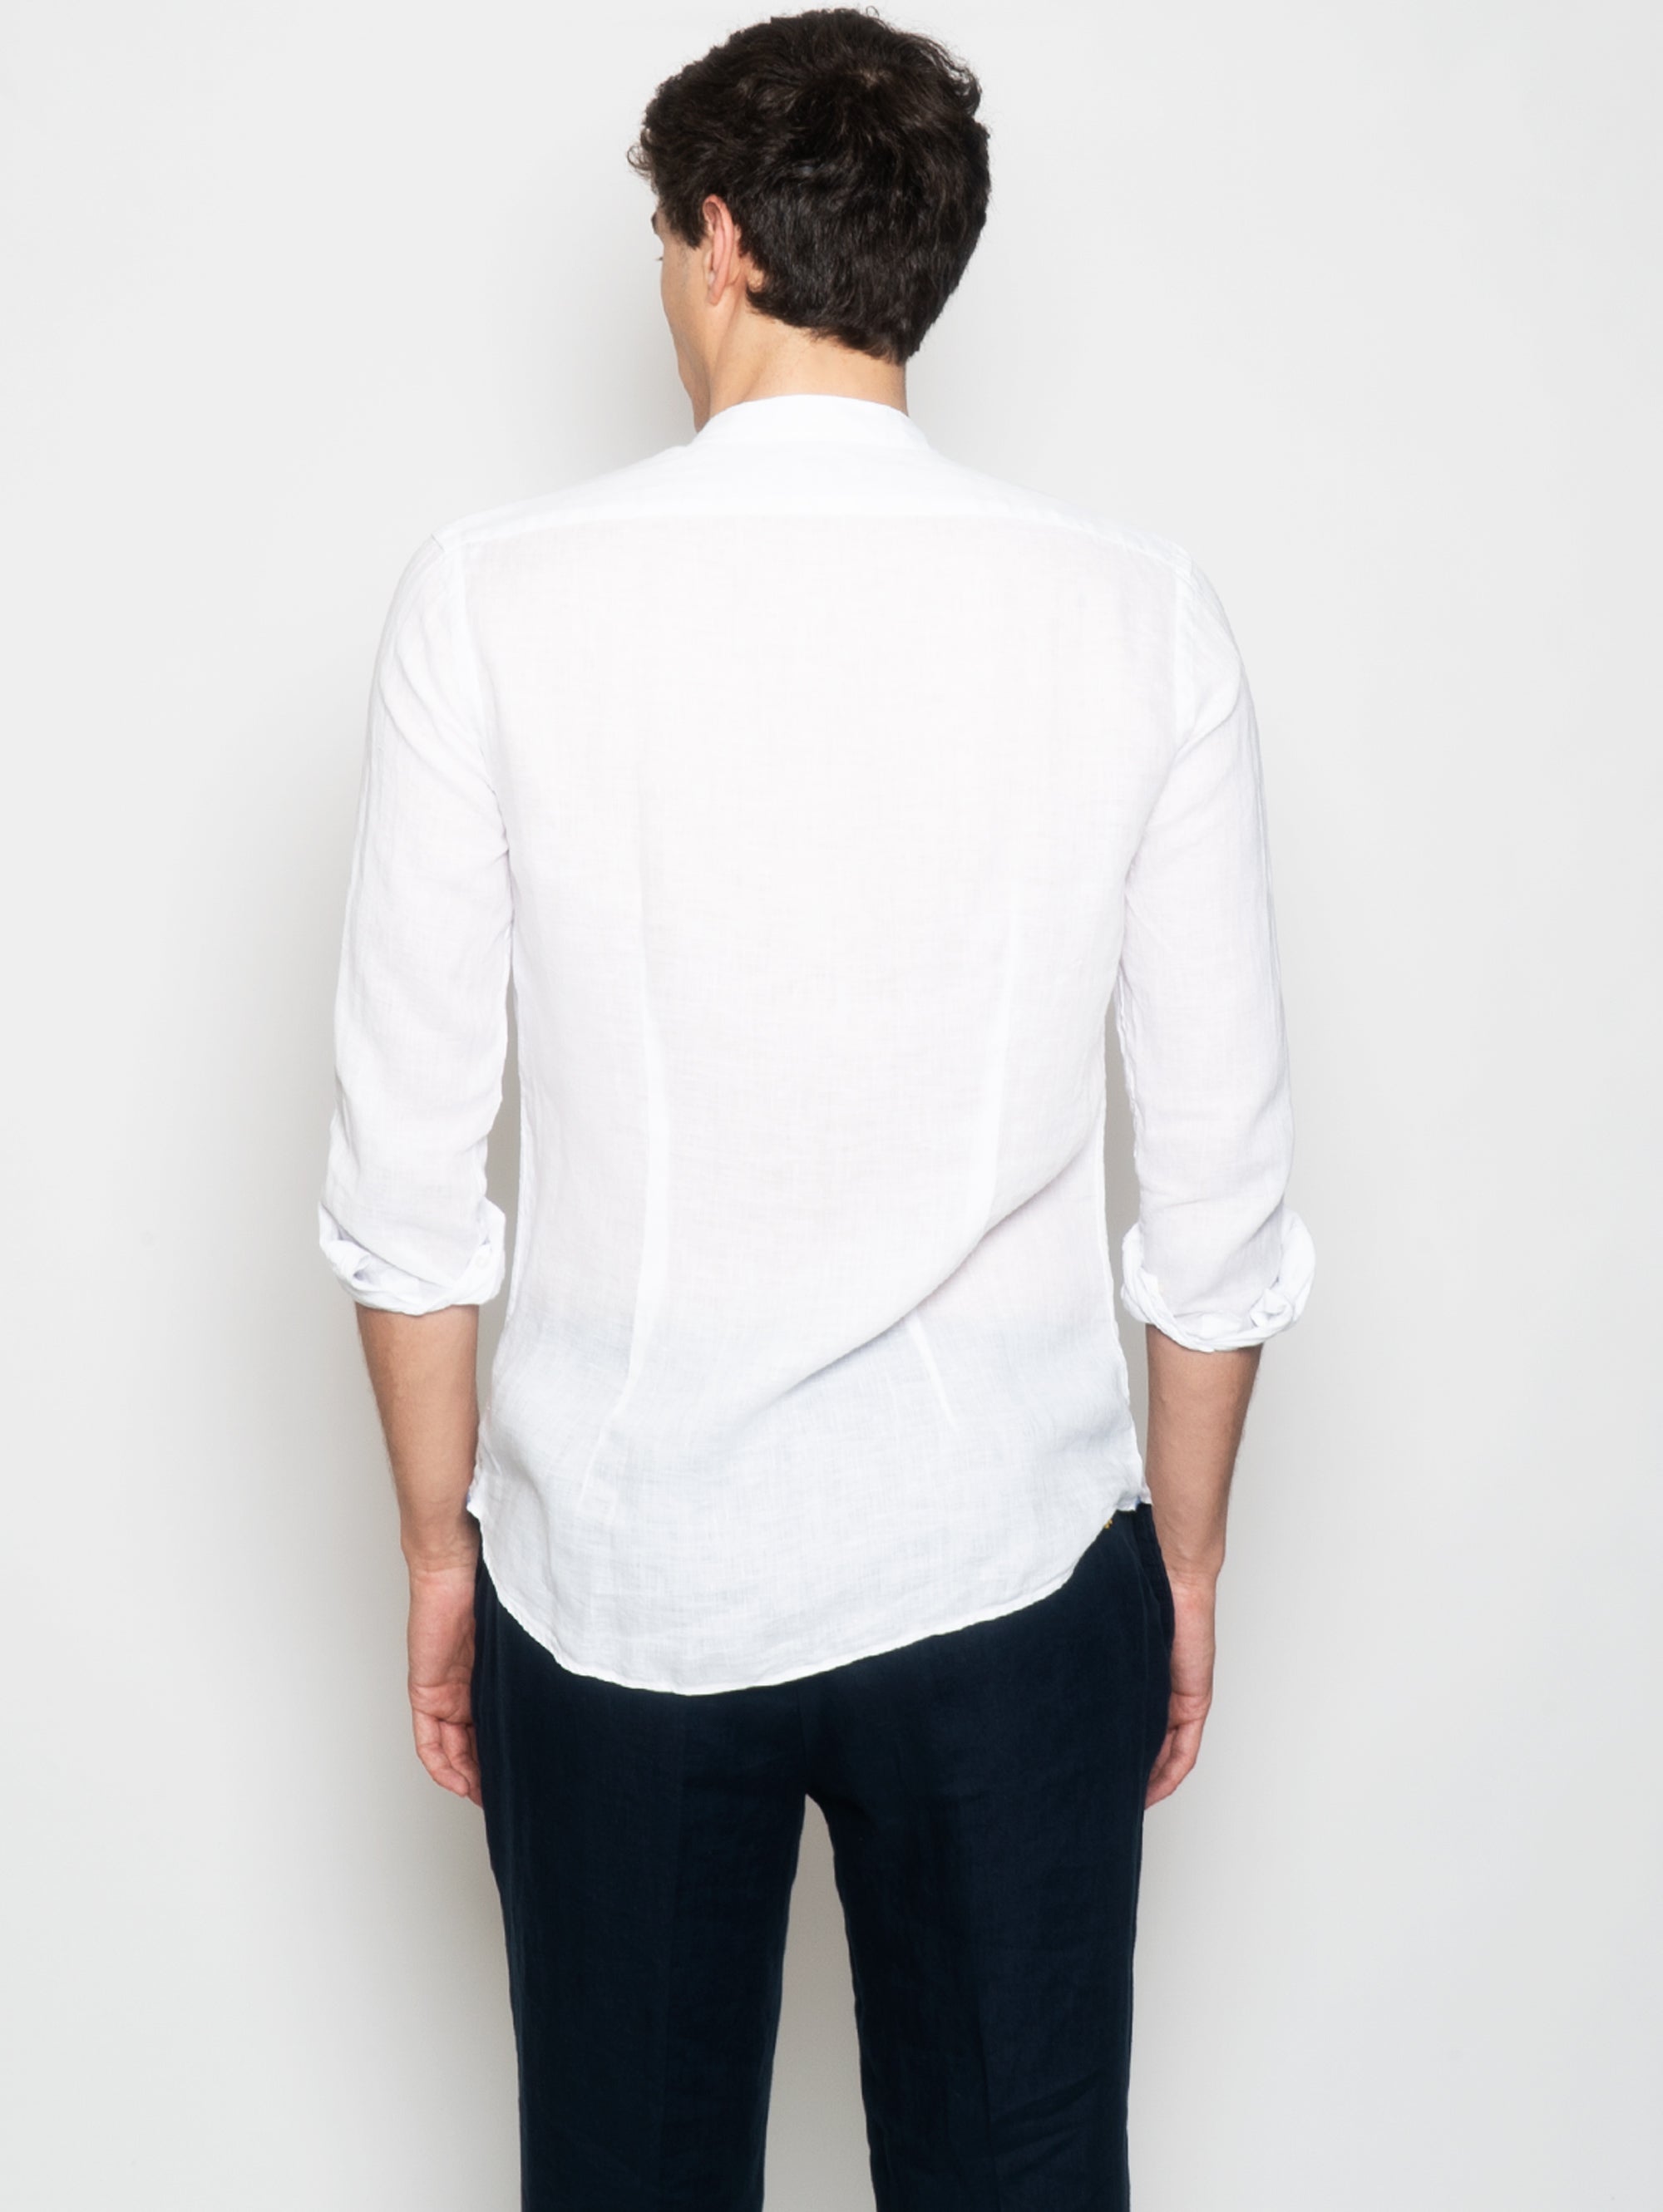 Koreanisches Hemd aus weißem Leinen